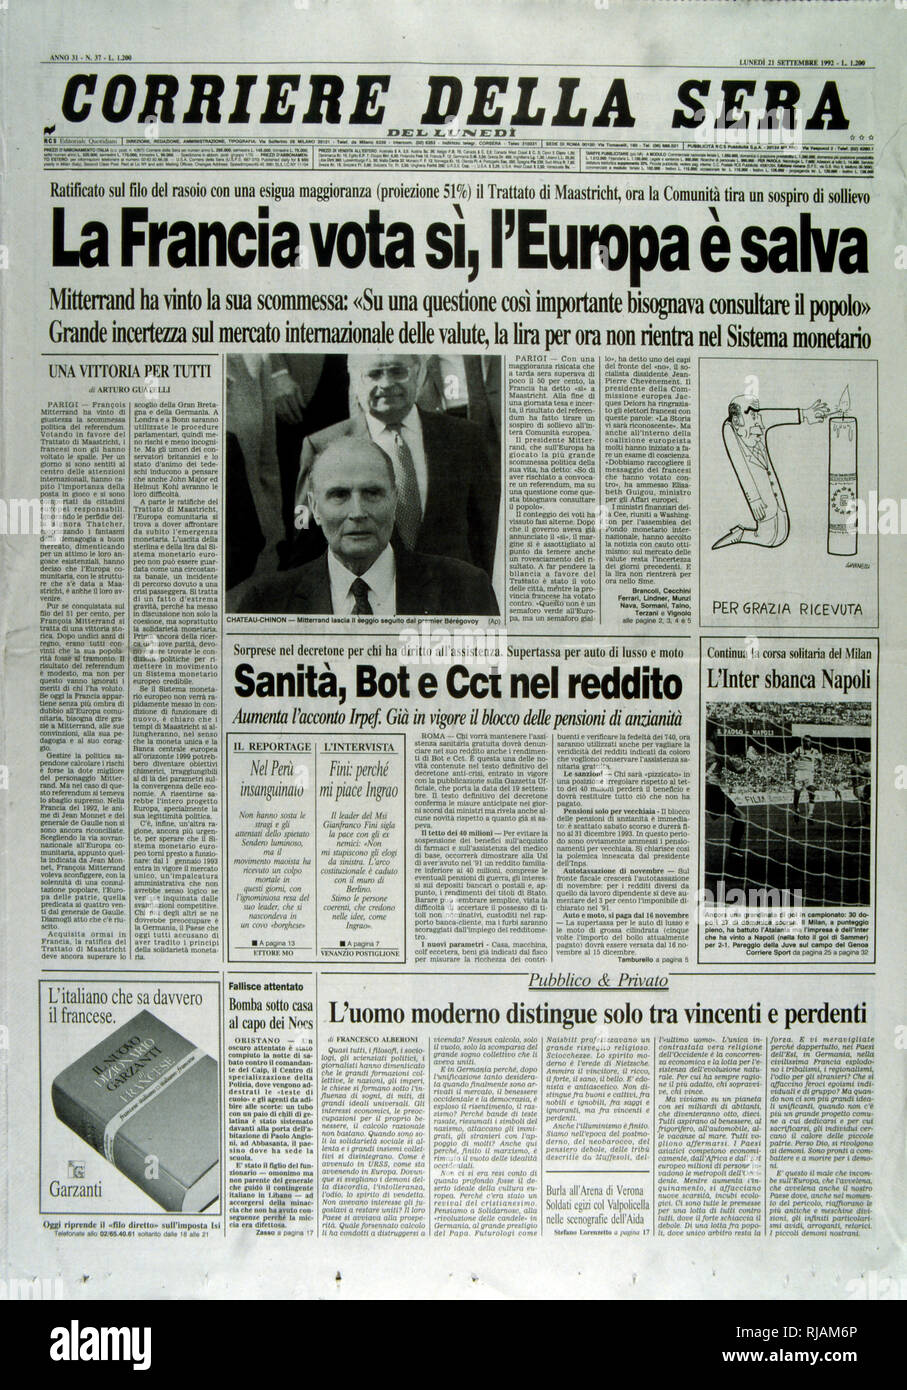 Tapa del periódico italiano "Corriere della Sera" tras el referéndum sobre el Tratado de Maastricht, que se celebró en Francia el 20 de septiembre de 1992. Fue aprobado por el 51% de los votantes. El resultado del referéndum, conocido como el ''petit oui'', junto con la danesa ''No'' votación se consideran señales del fin de la ''consenso permisivo'' sobre la integración europea, que había existido en la mayor parte de Europa continental hasta entonces. Desde este punto en adelante las cuestiones relativas a la integración europea estaban sujetas a un escrutinio mucho mayor en gran parte de Europa, y la evidente escepticismo euro ganó prominencia. Oh Foto de stock